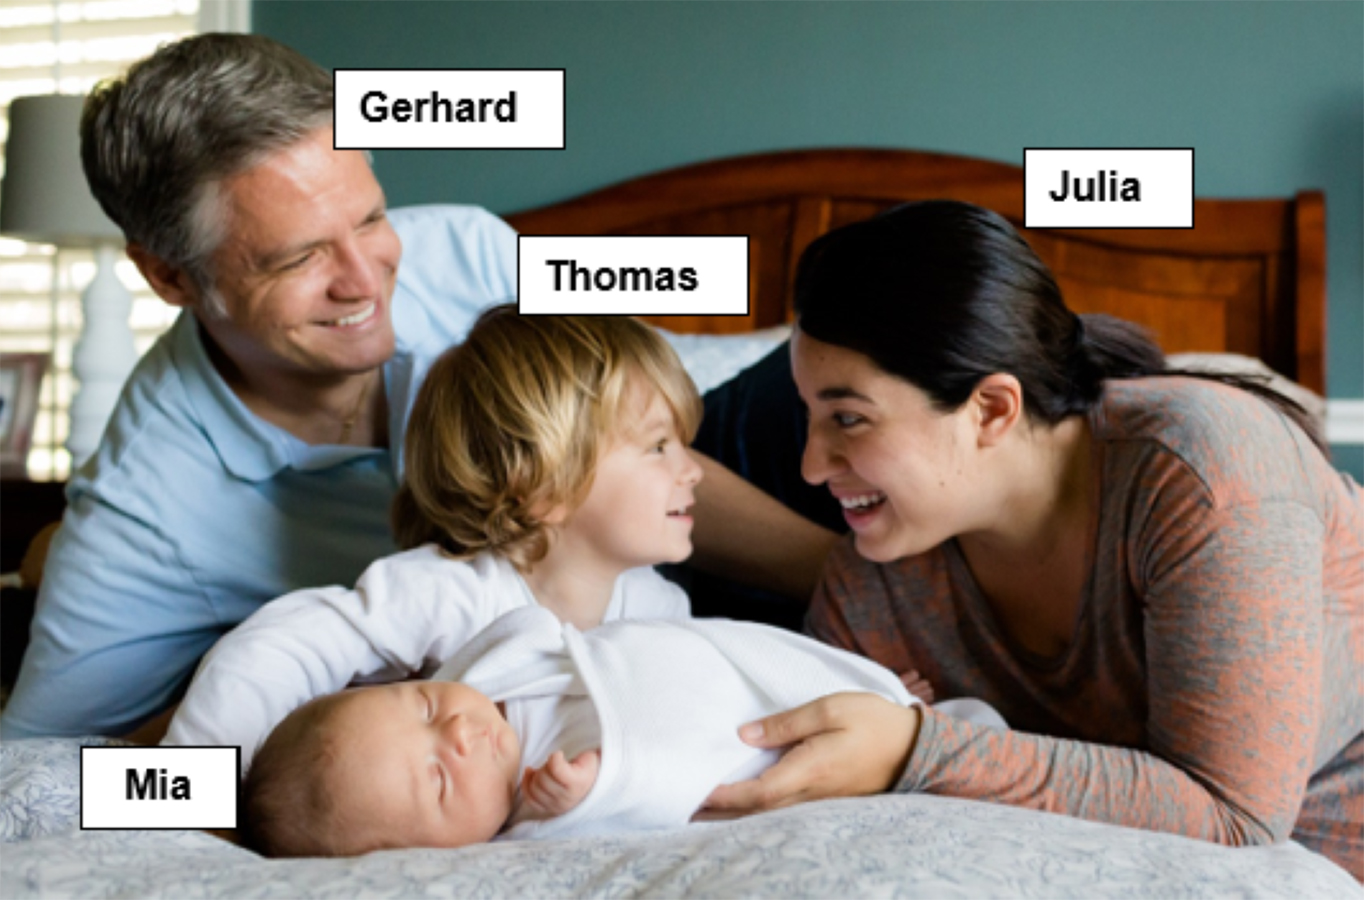 Slikom je prikazana četveročlana obitelj koja leži na krevetu. Uz svakog člana obitelji stoji ime: roditelji Gerhard i Julia te djeca Thomas i Mia.